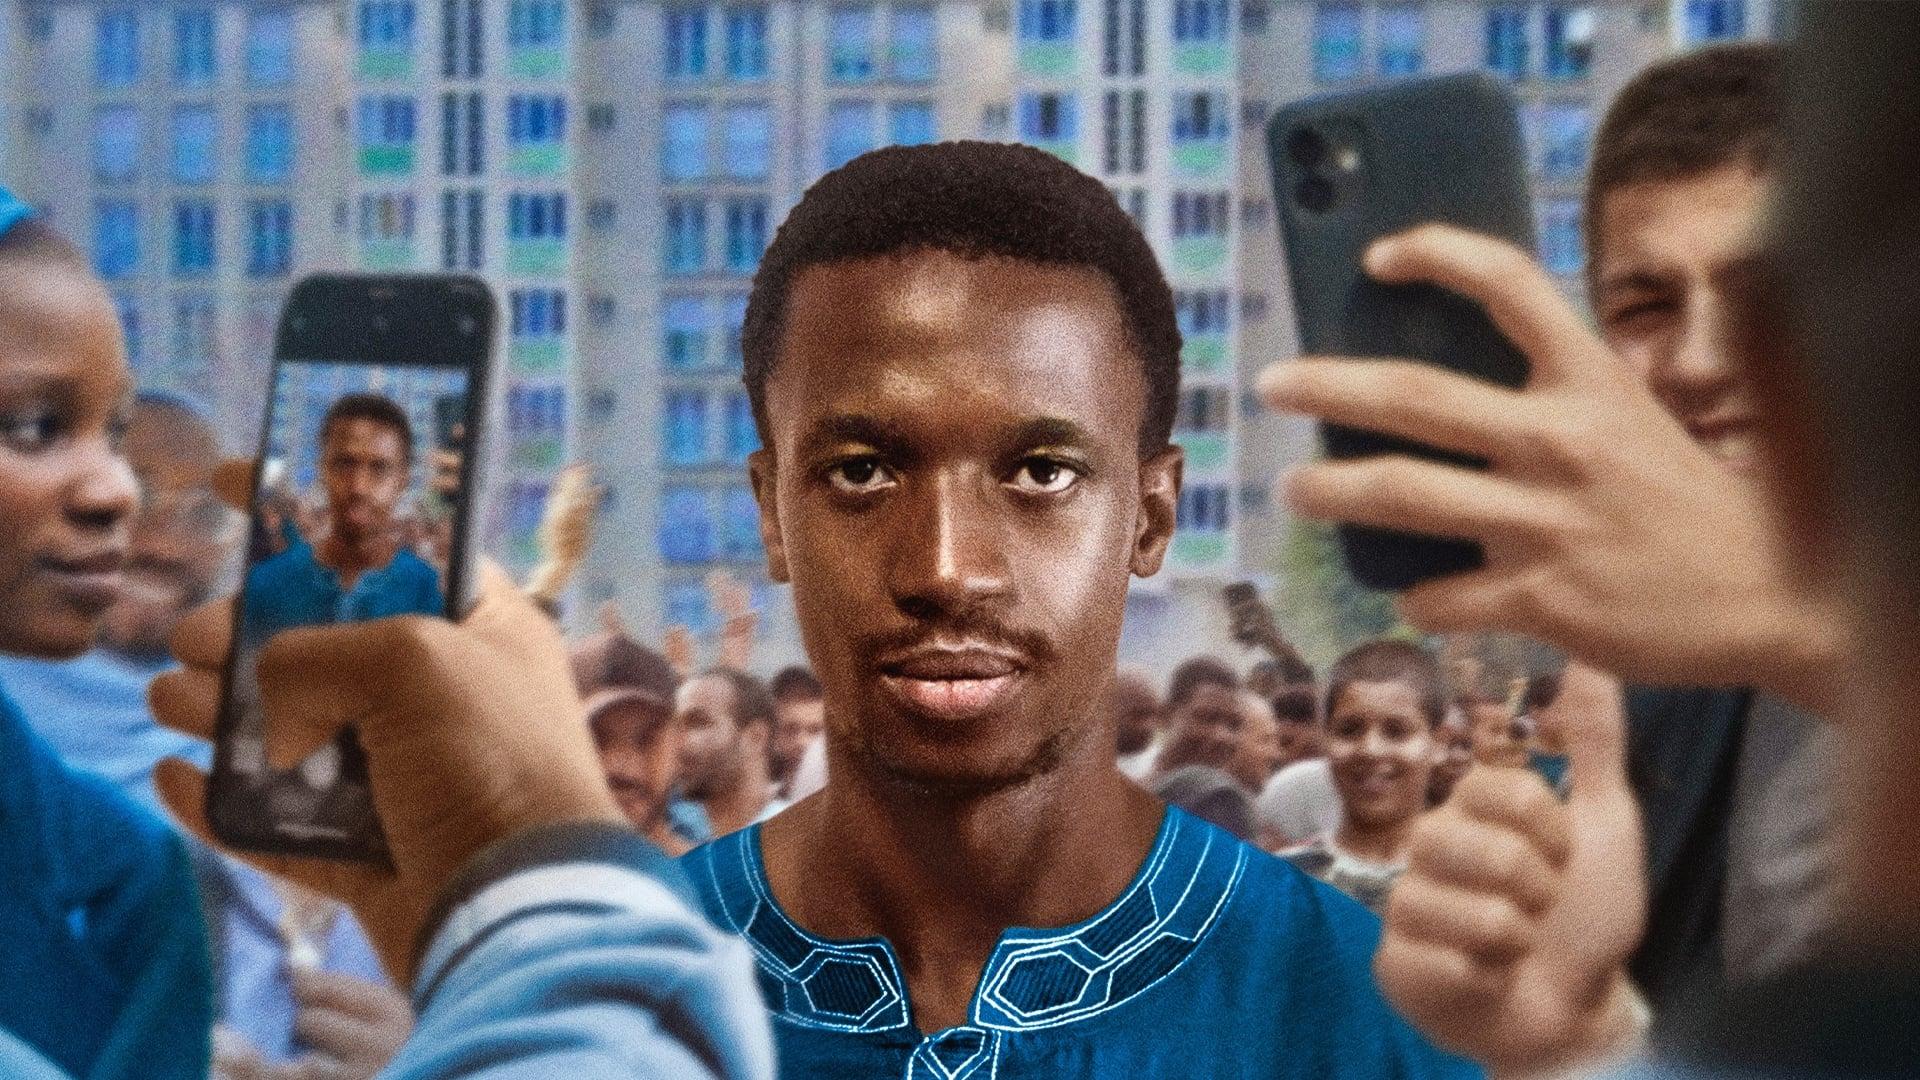 Moussa Cissé backdrop